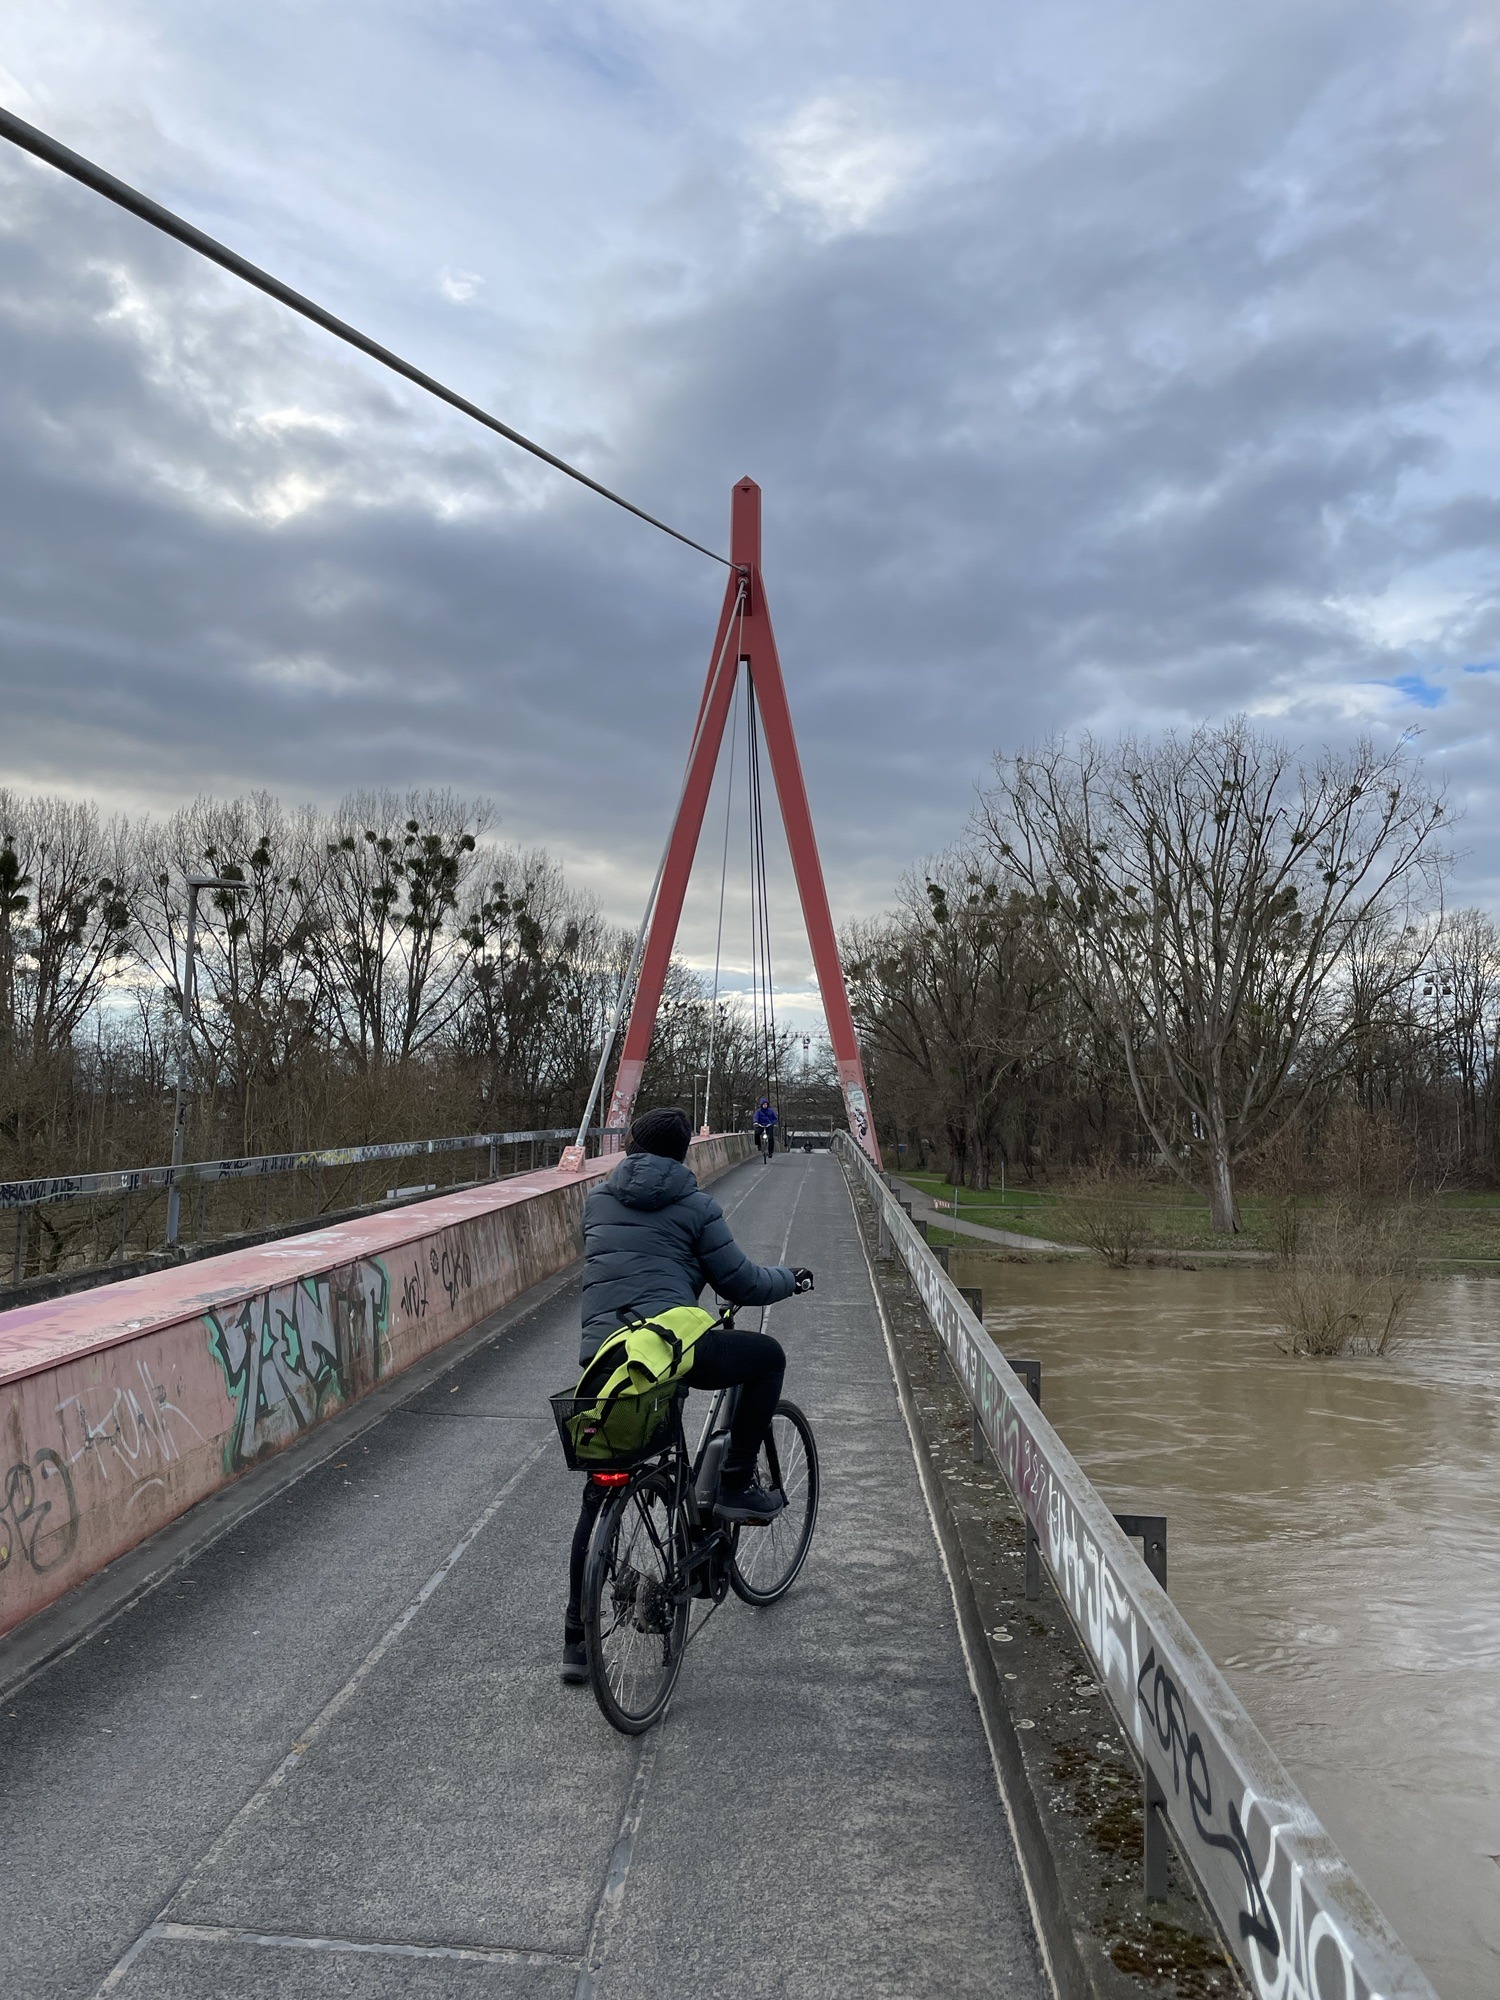 Brücke über die Ihme mit Spannvorrichtung und haltender Radfahrerin im Vordergrund.